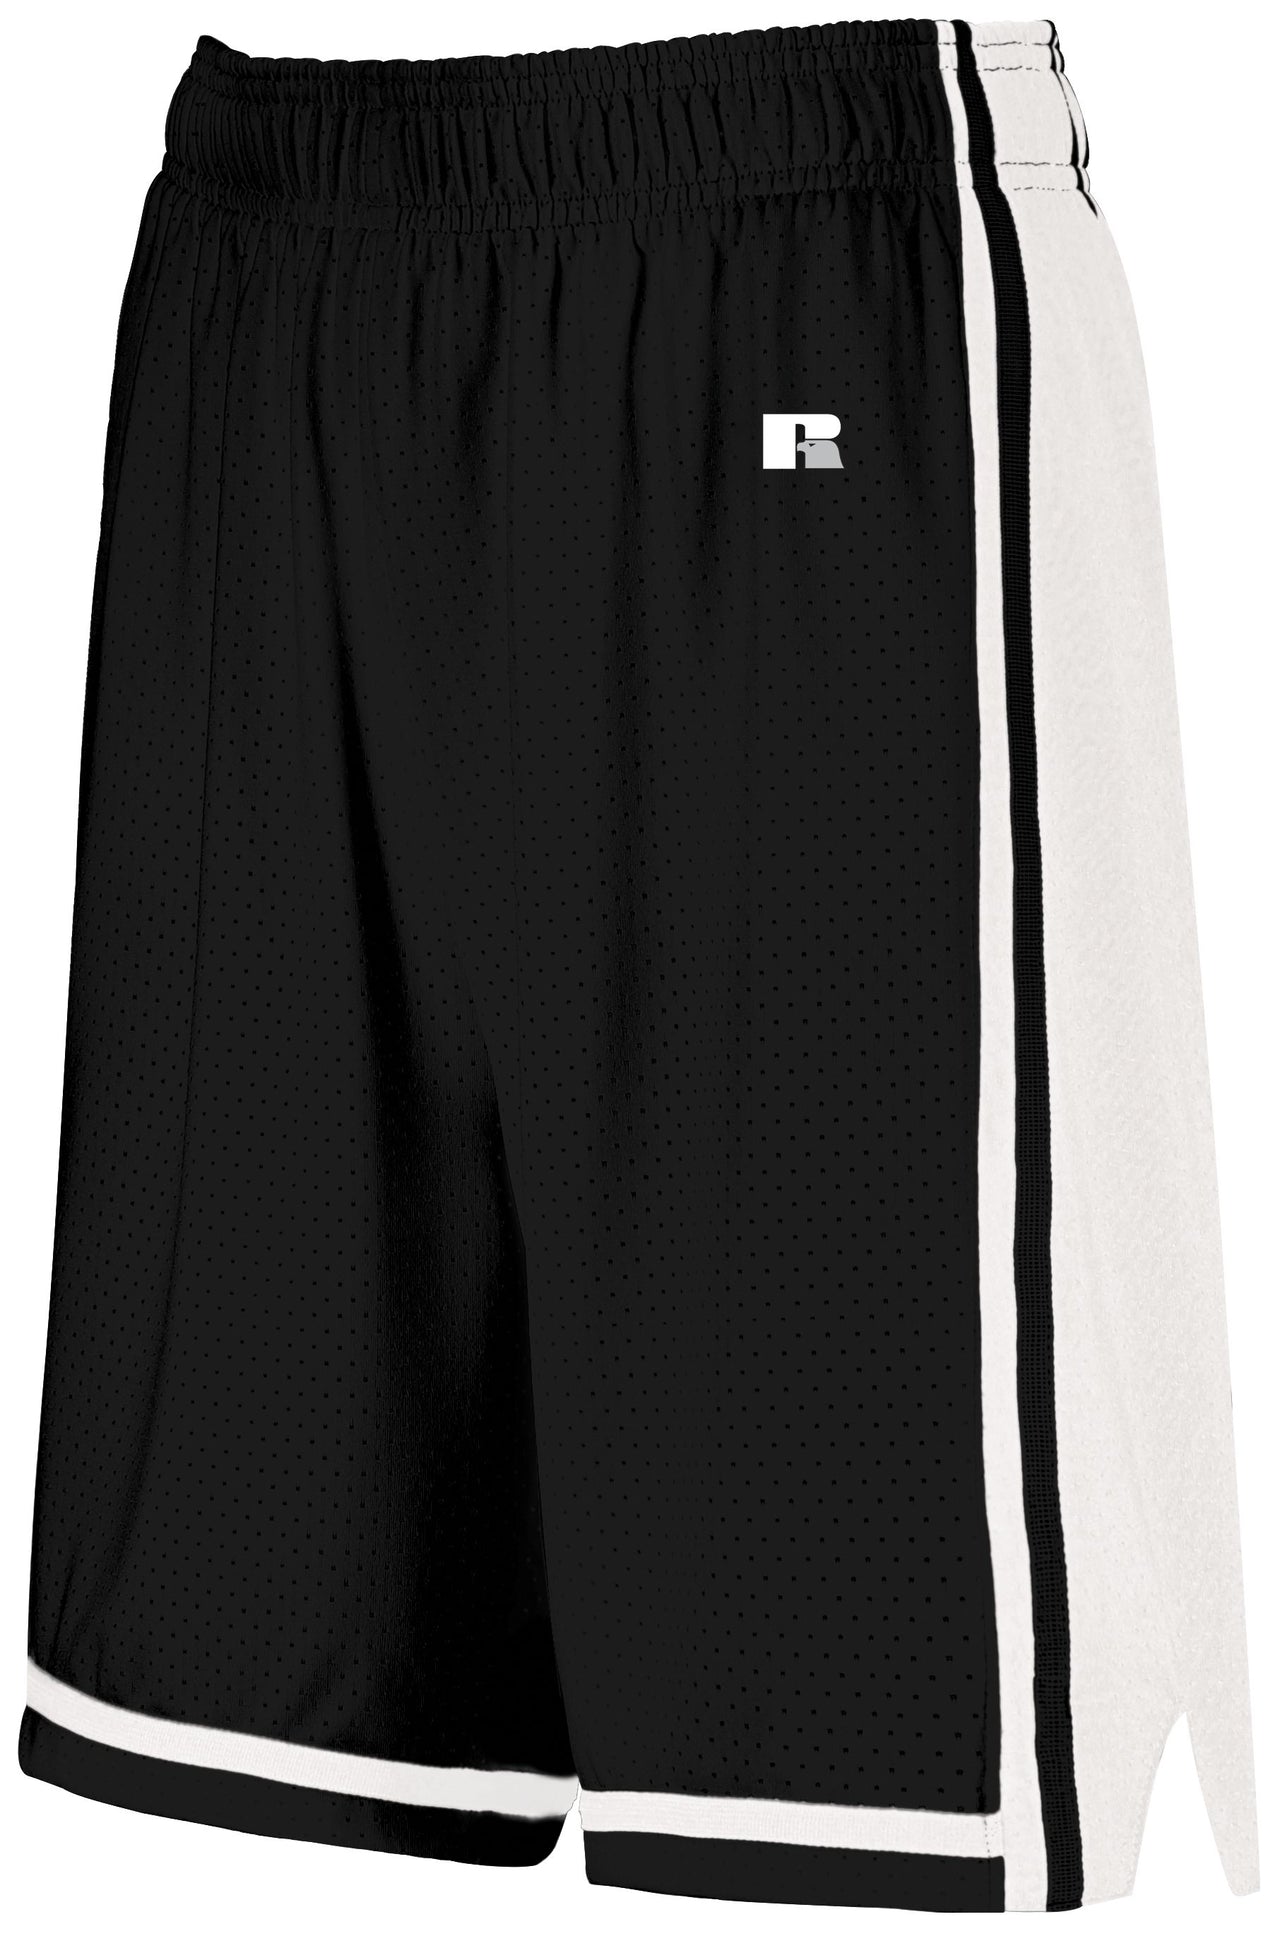 Ladies Legacy Basketball Shorts - 4B2VTX